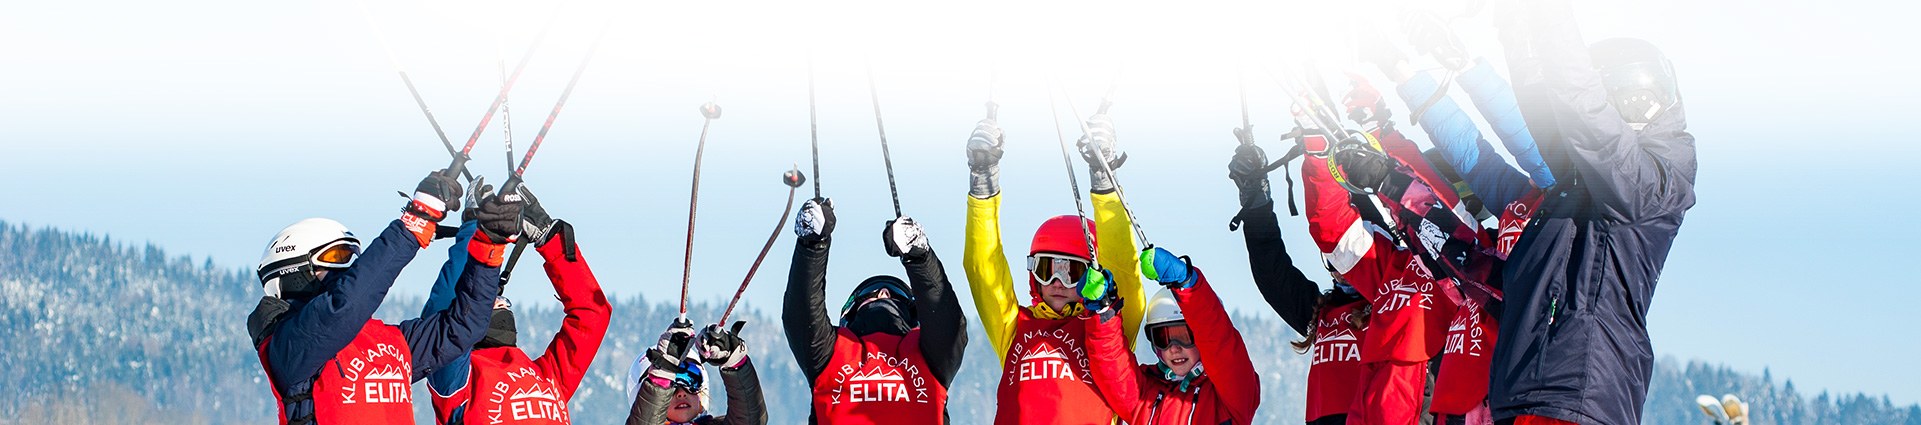 grupa osób ze sprzętem narciarskim